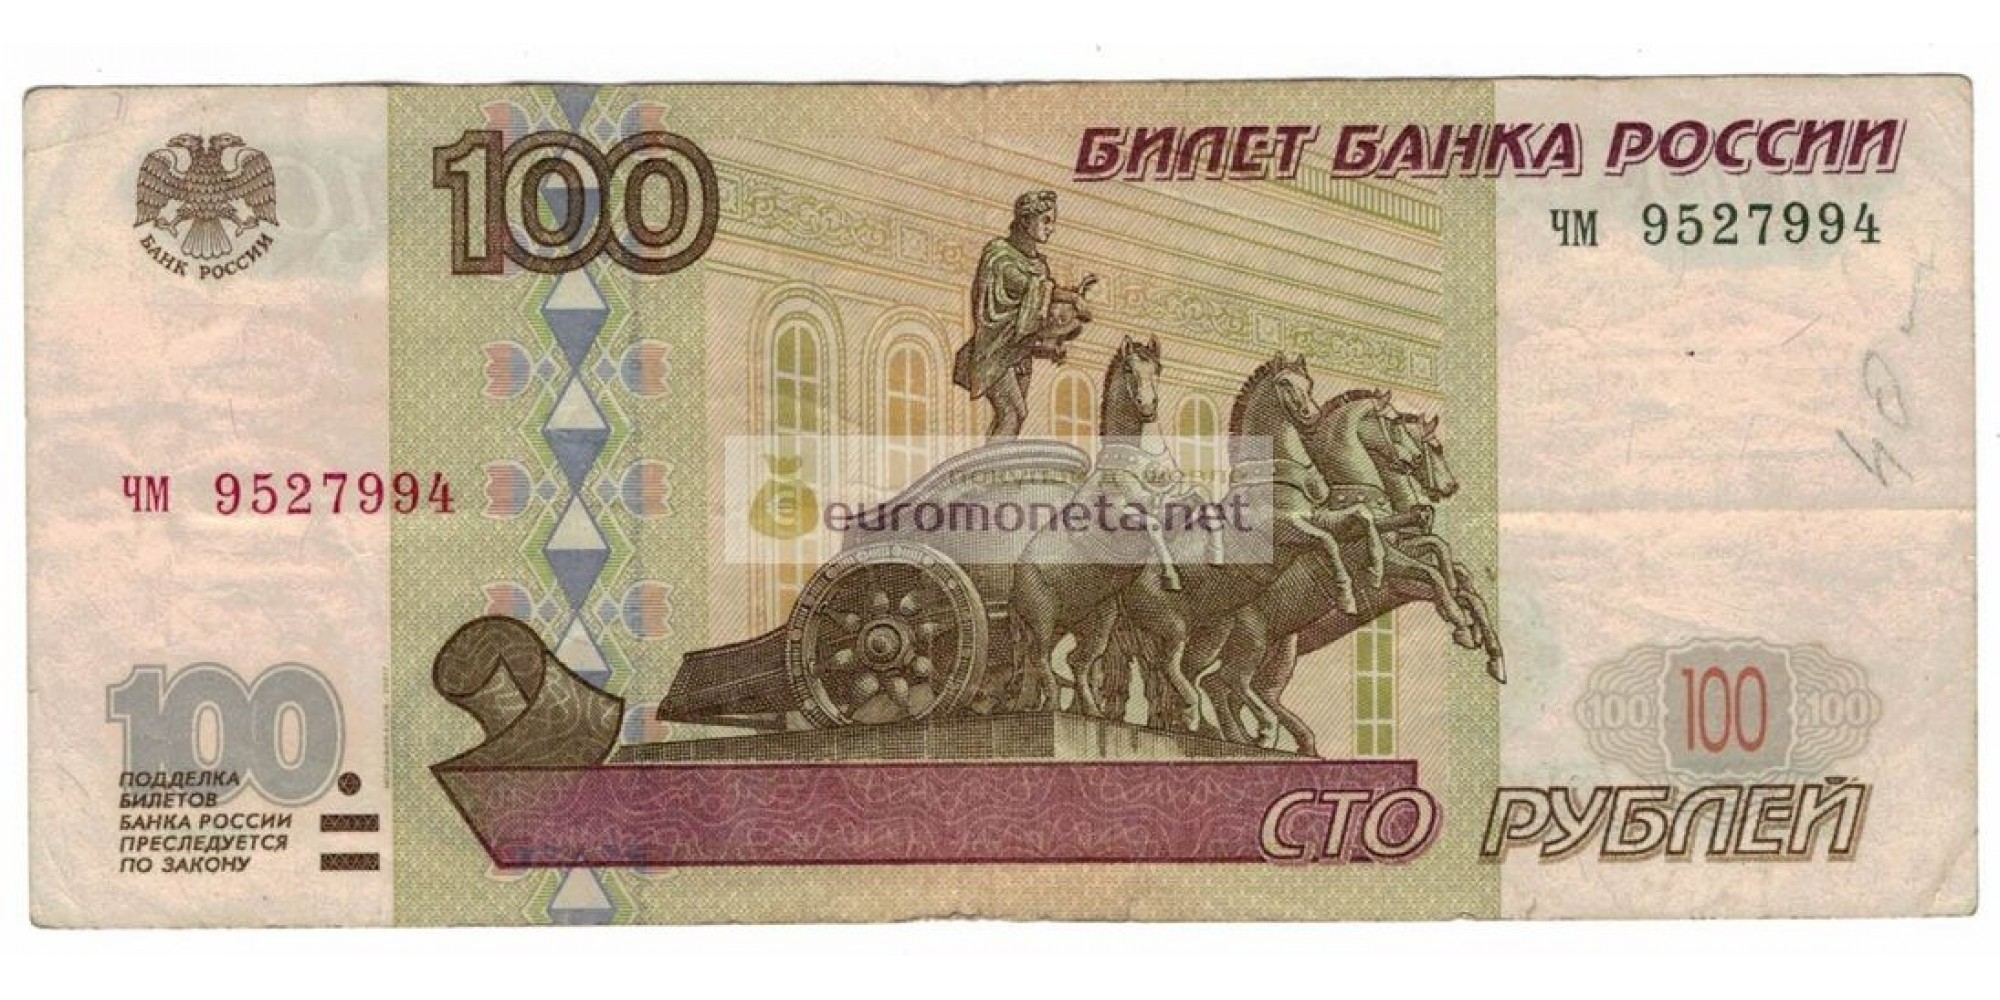 Россия 100 рублей 1997 год модификация 2001 год серия чм 9527994